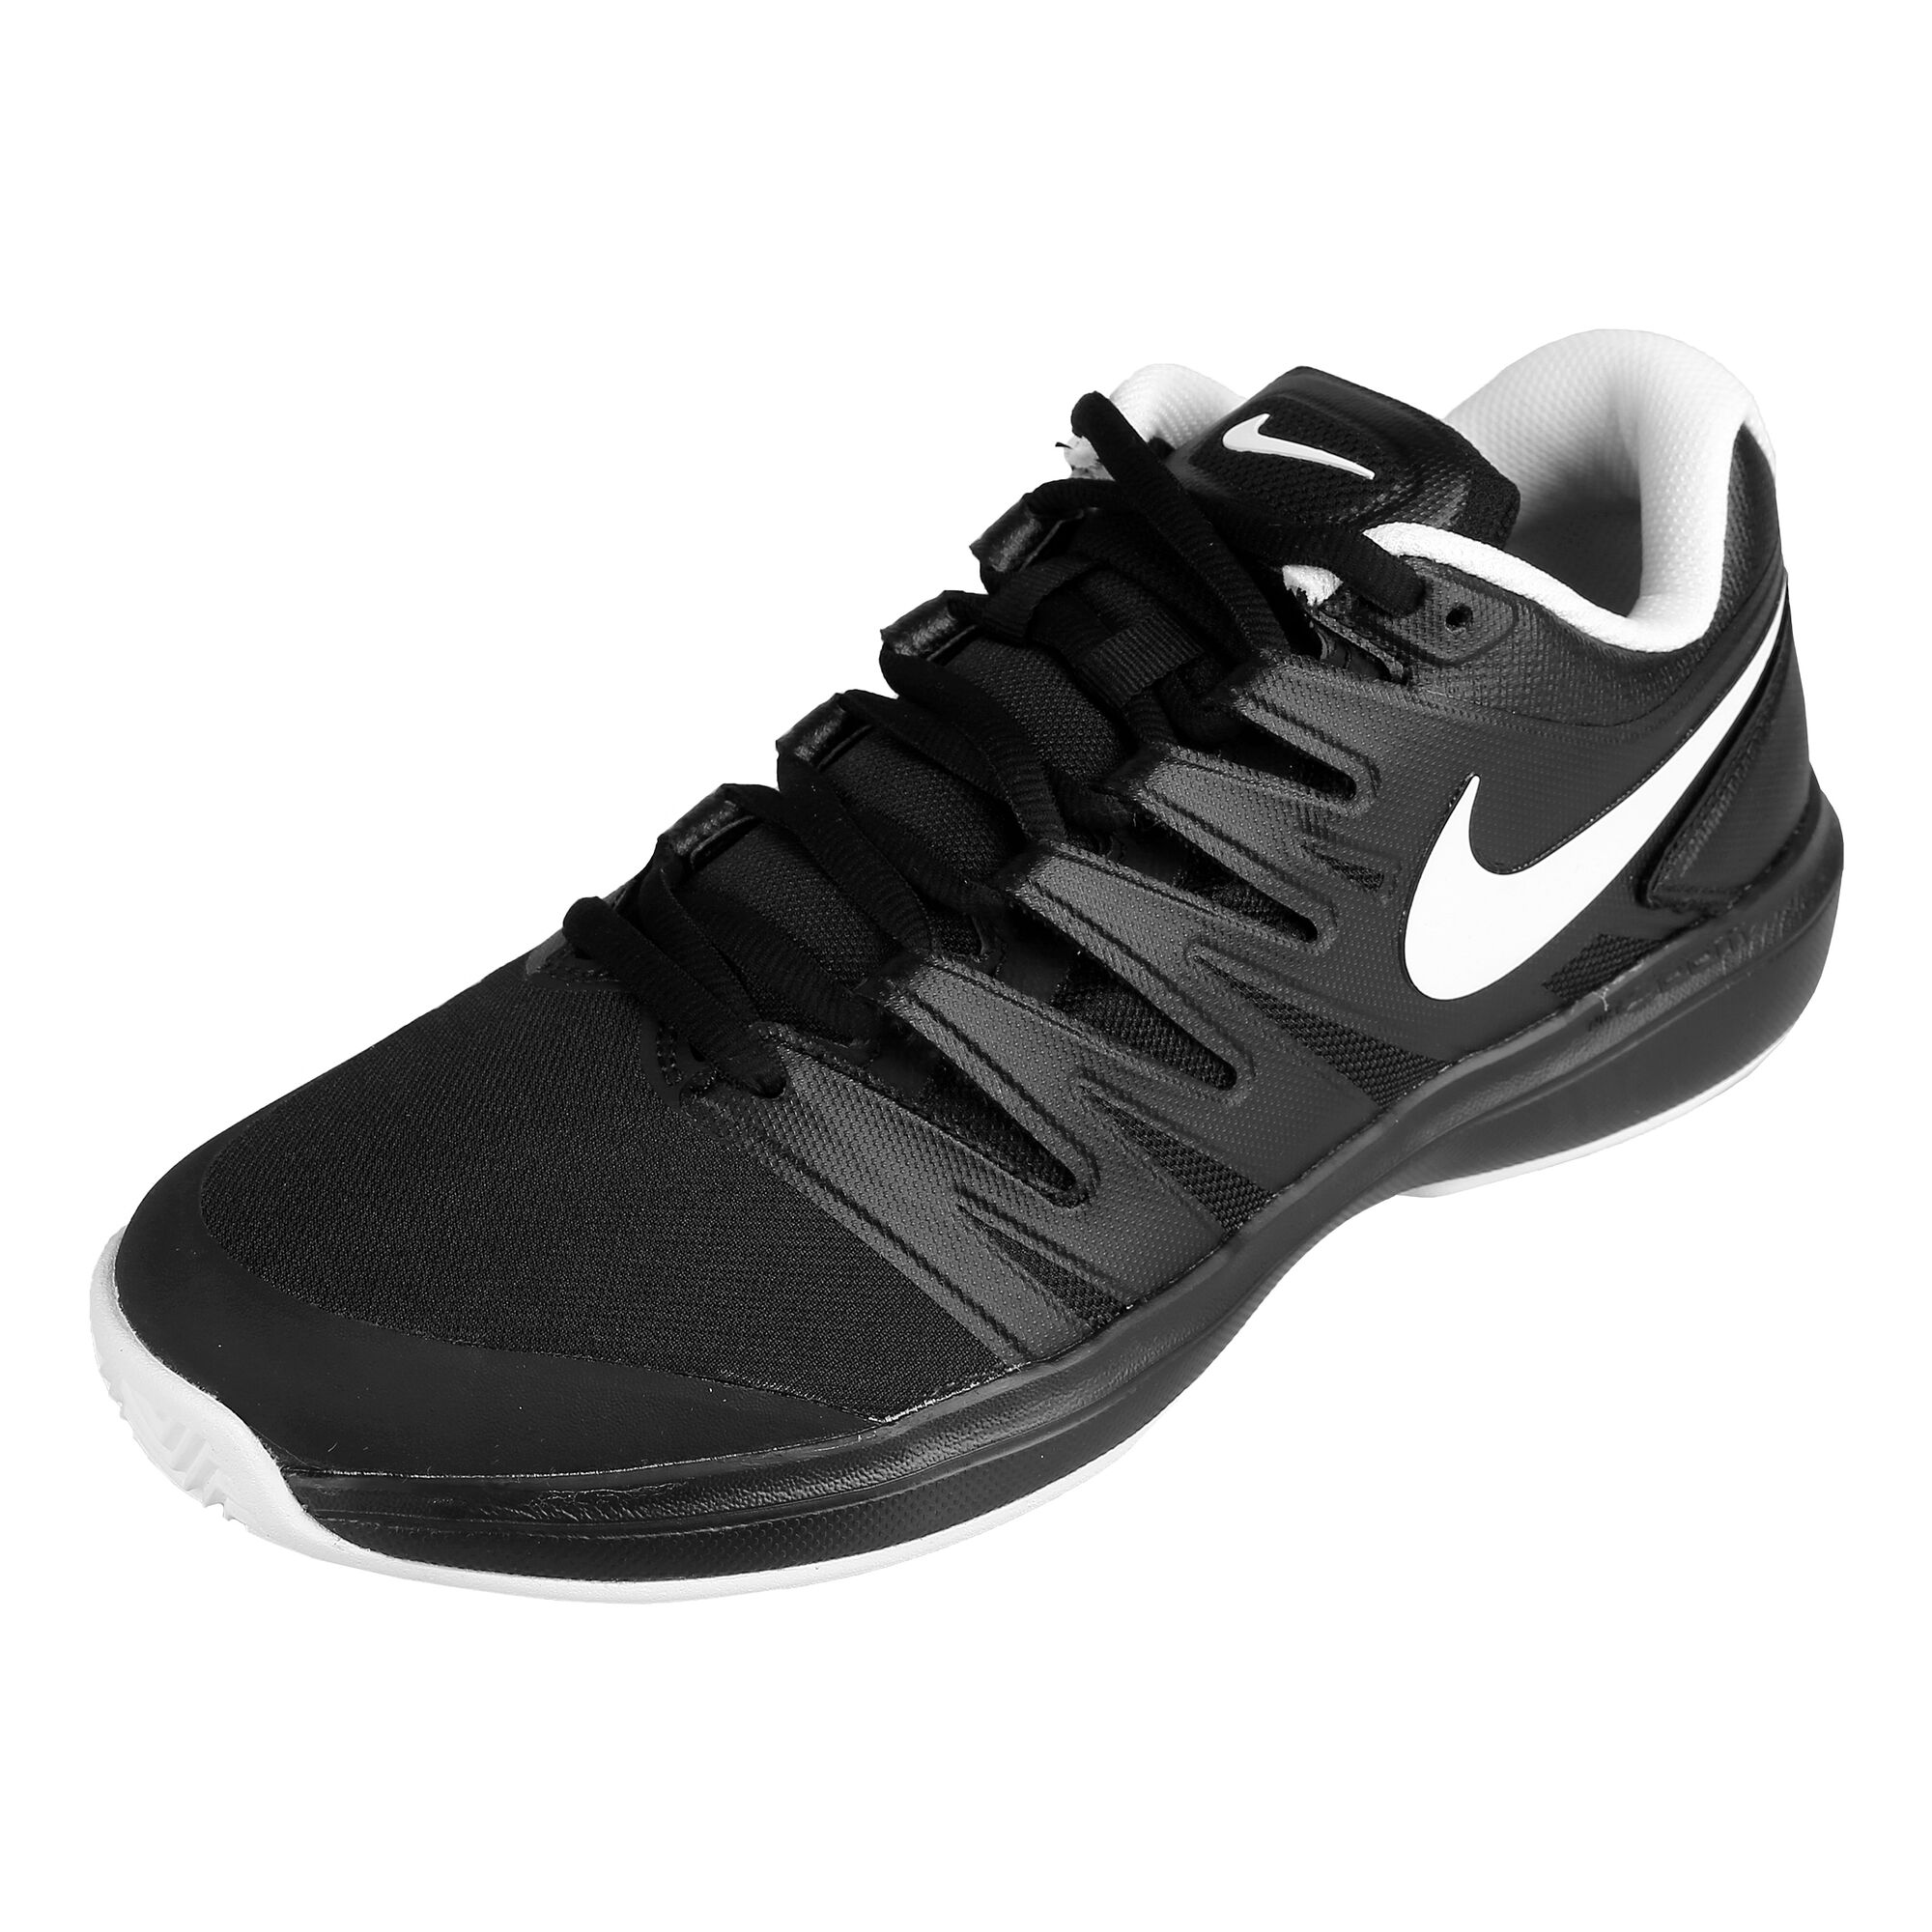 Schoolonderwijs Ademen smaak buy Nike Air Zoom Prestige Clay Court Shoe Men - Black, Pink online |  Tennis-Point